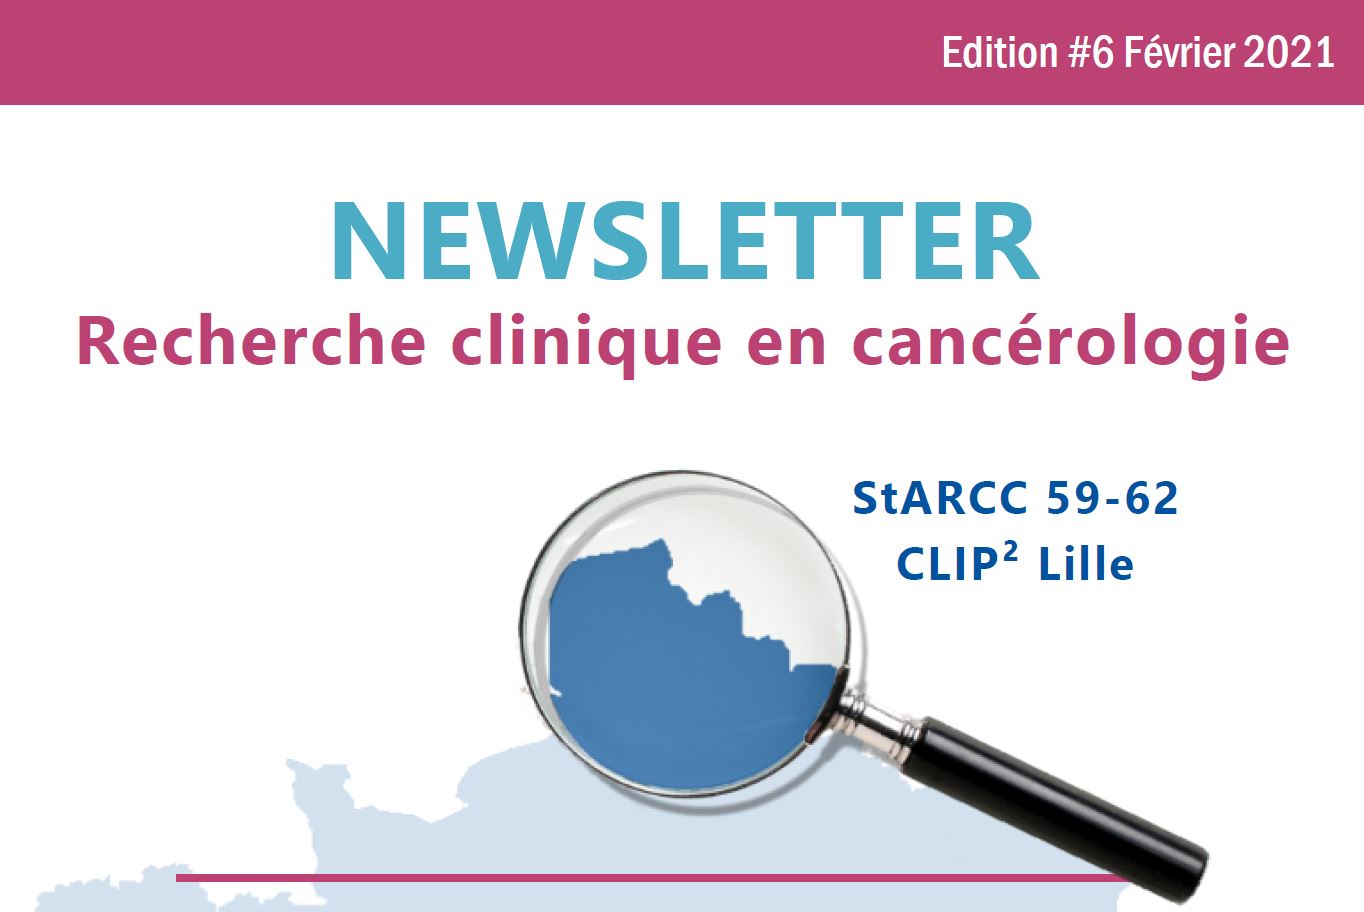 Etudes cliniques oncologie hématologie Nord Pas-de-Calais Hauts-de-France / cancer cancérologie essais cliniques phases précoces